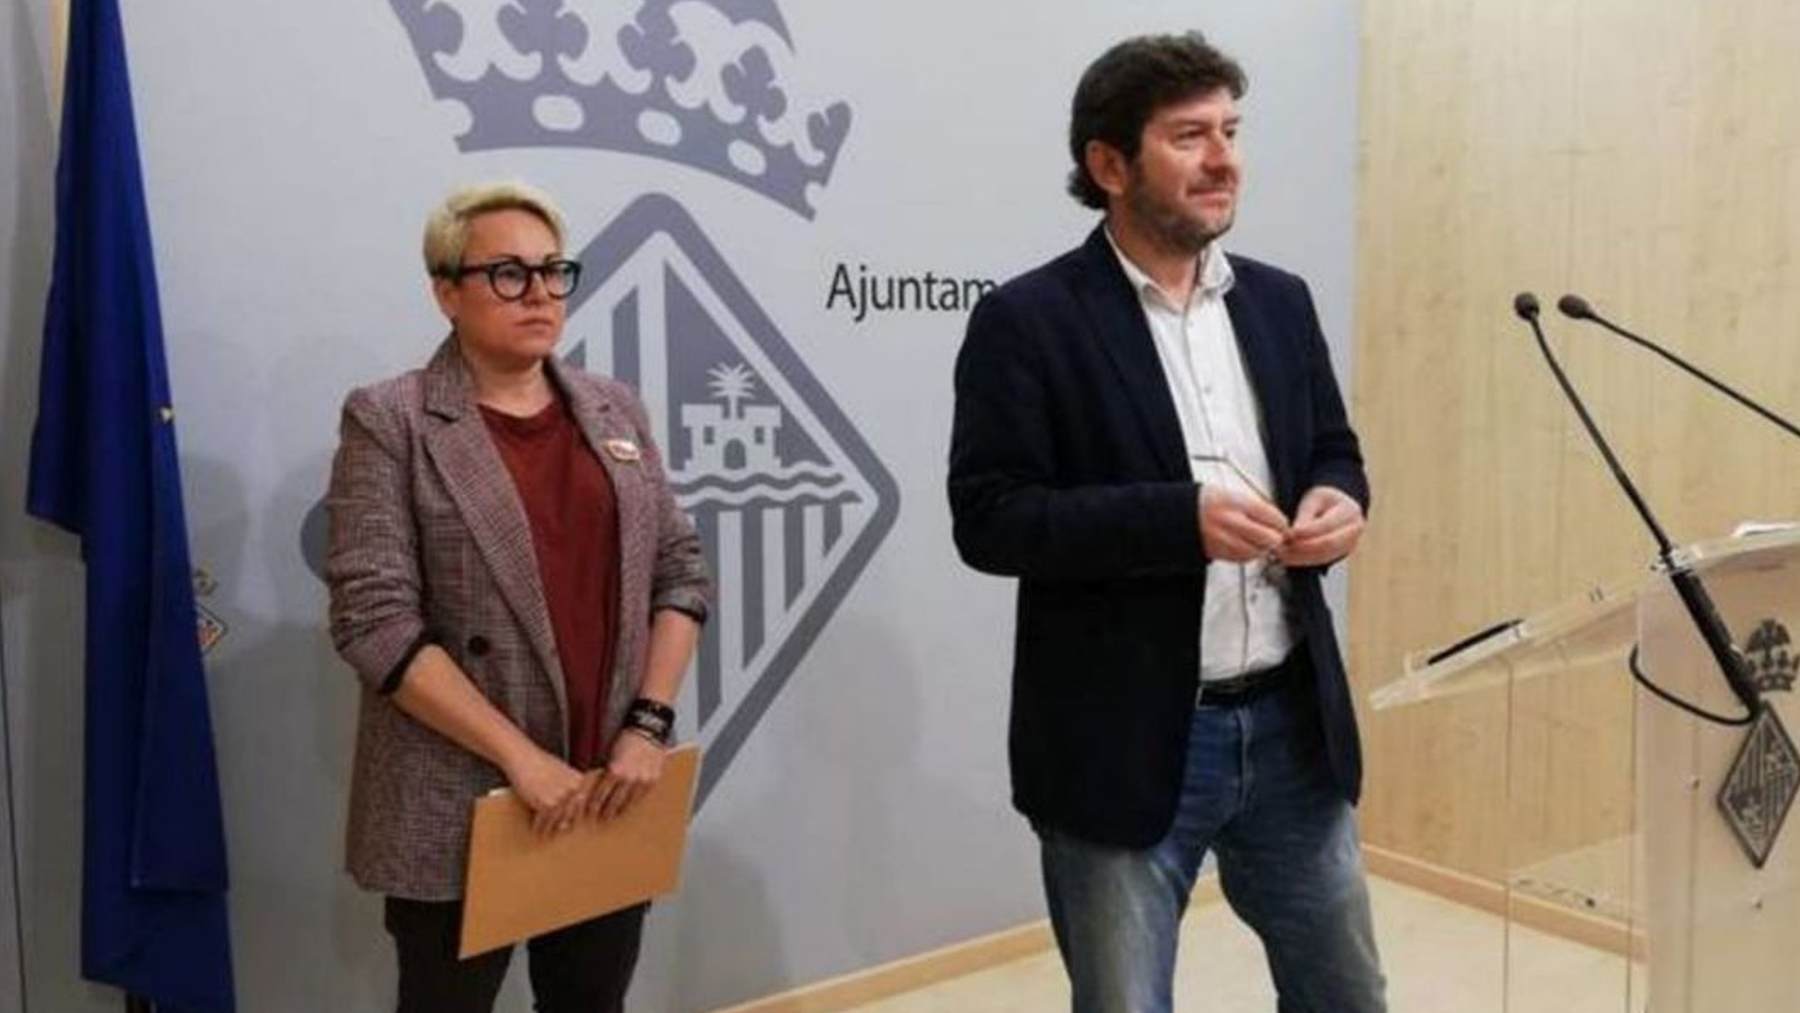 Los ediles de Podemos en el Ayuntamiento de Palma, Alberto Jarabo y Sonia Vivas.